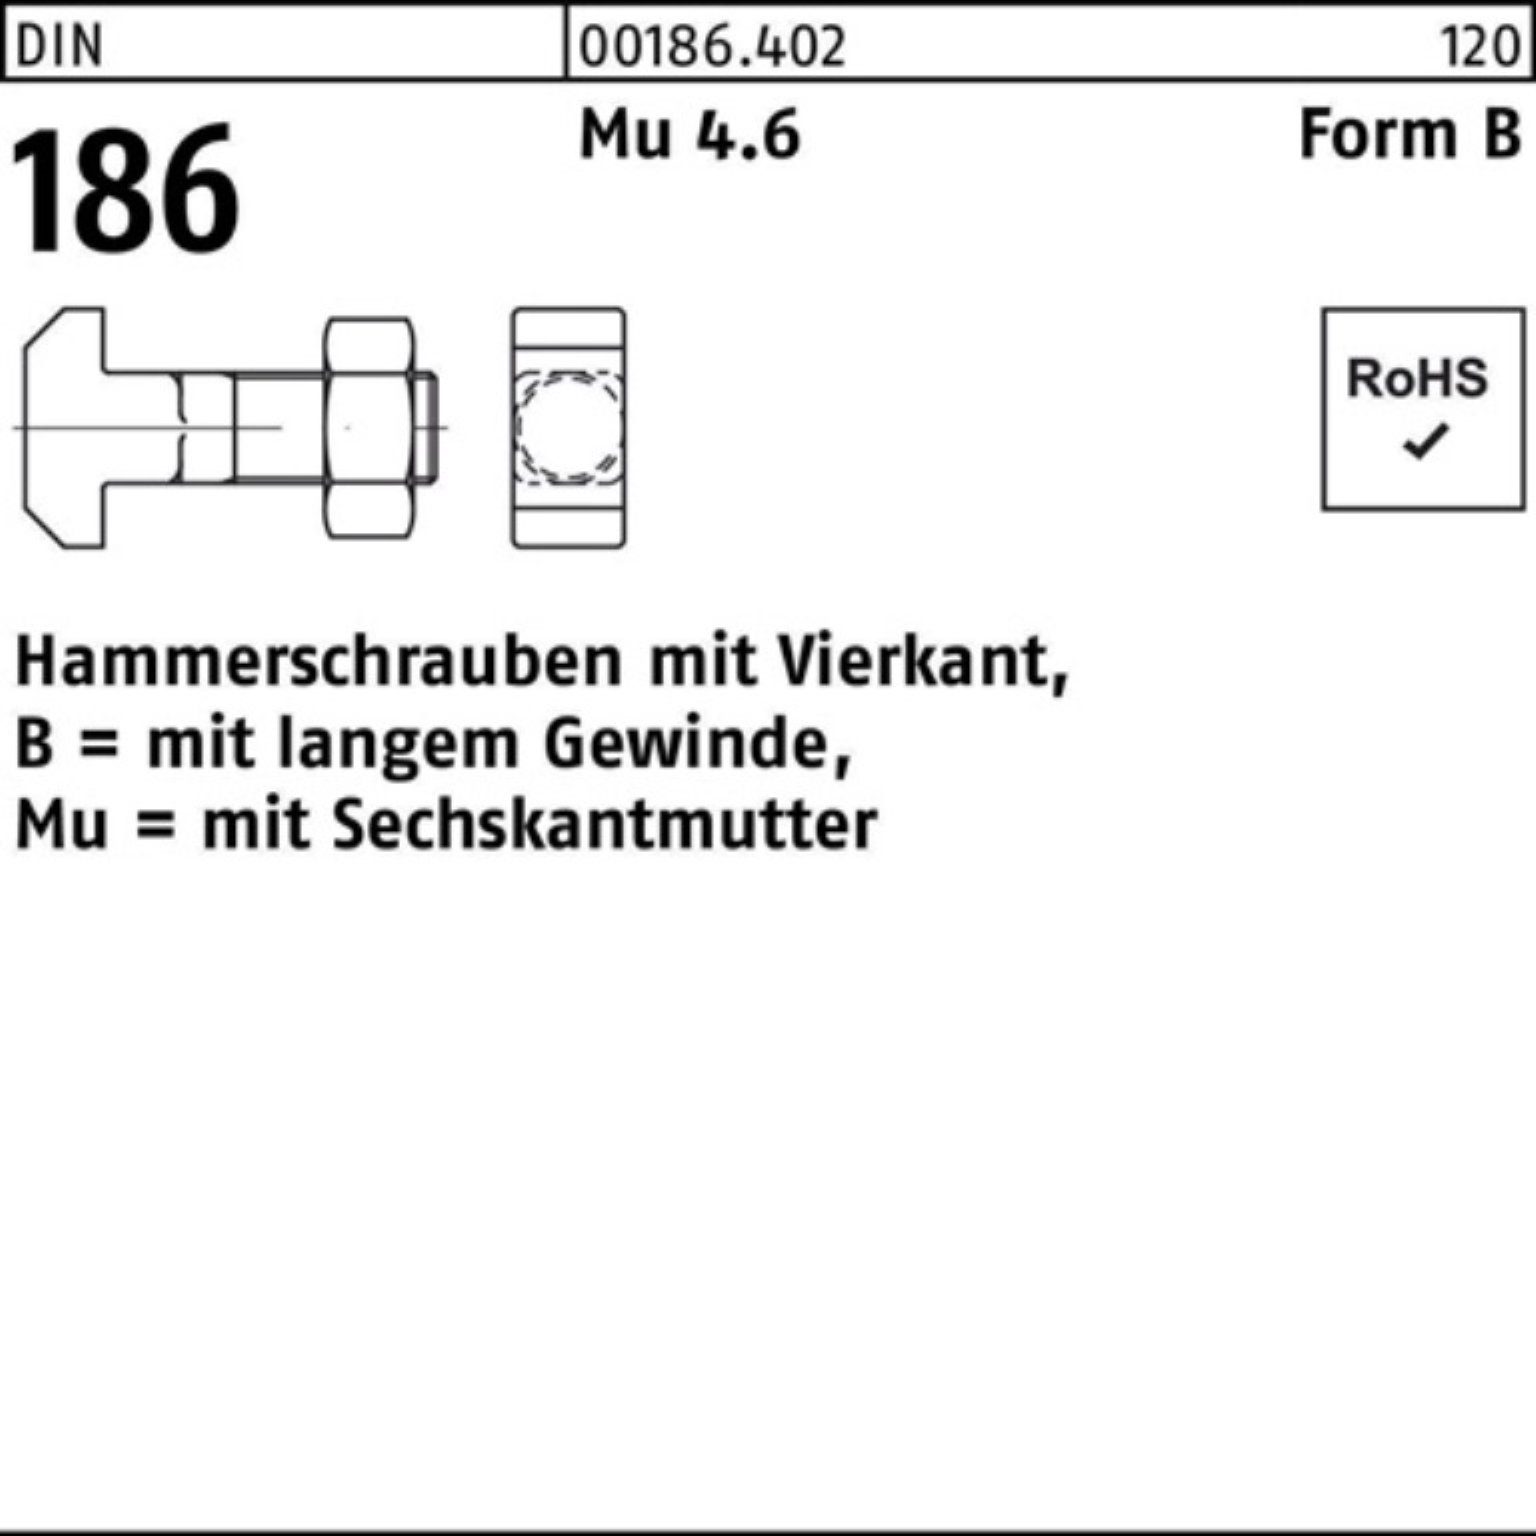 BM DIN 8x M 186 50 Hammerschraube 6-ktmutter FormB Vierkant Reyher 100er Pack Schraube